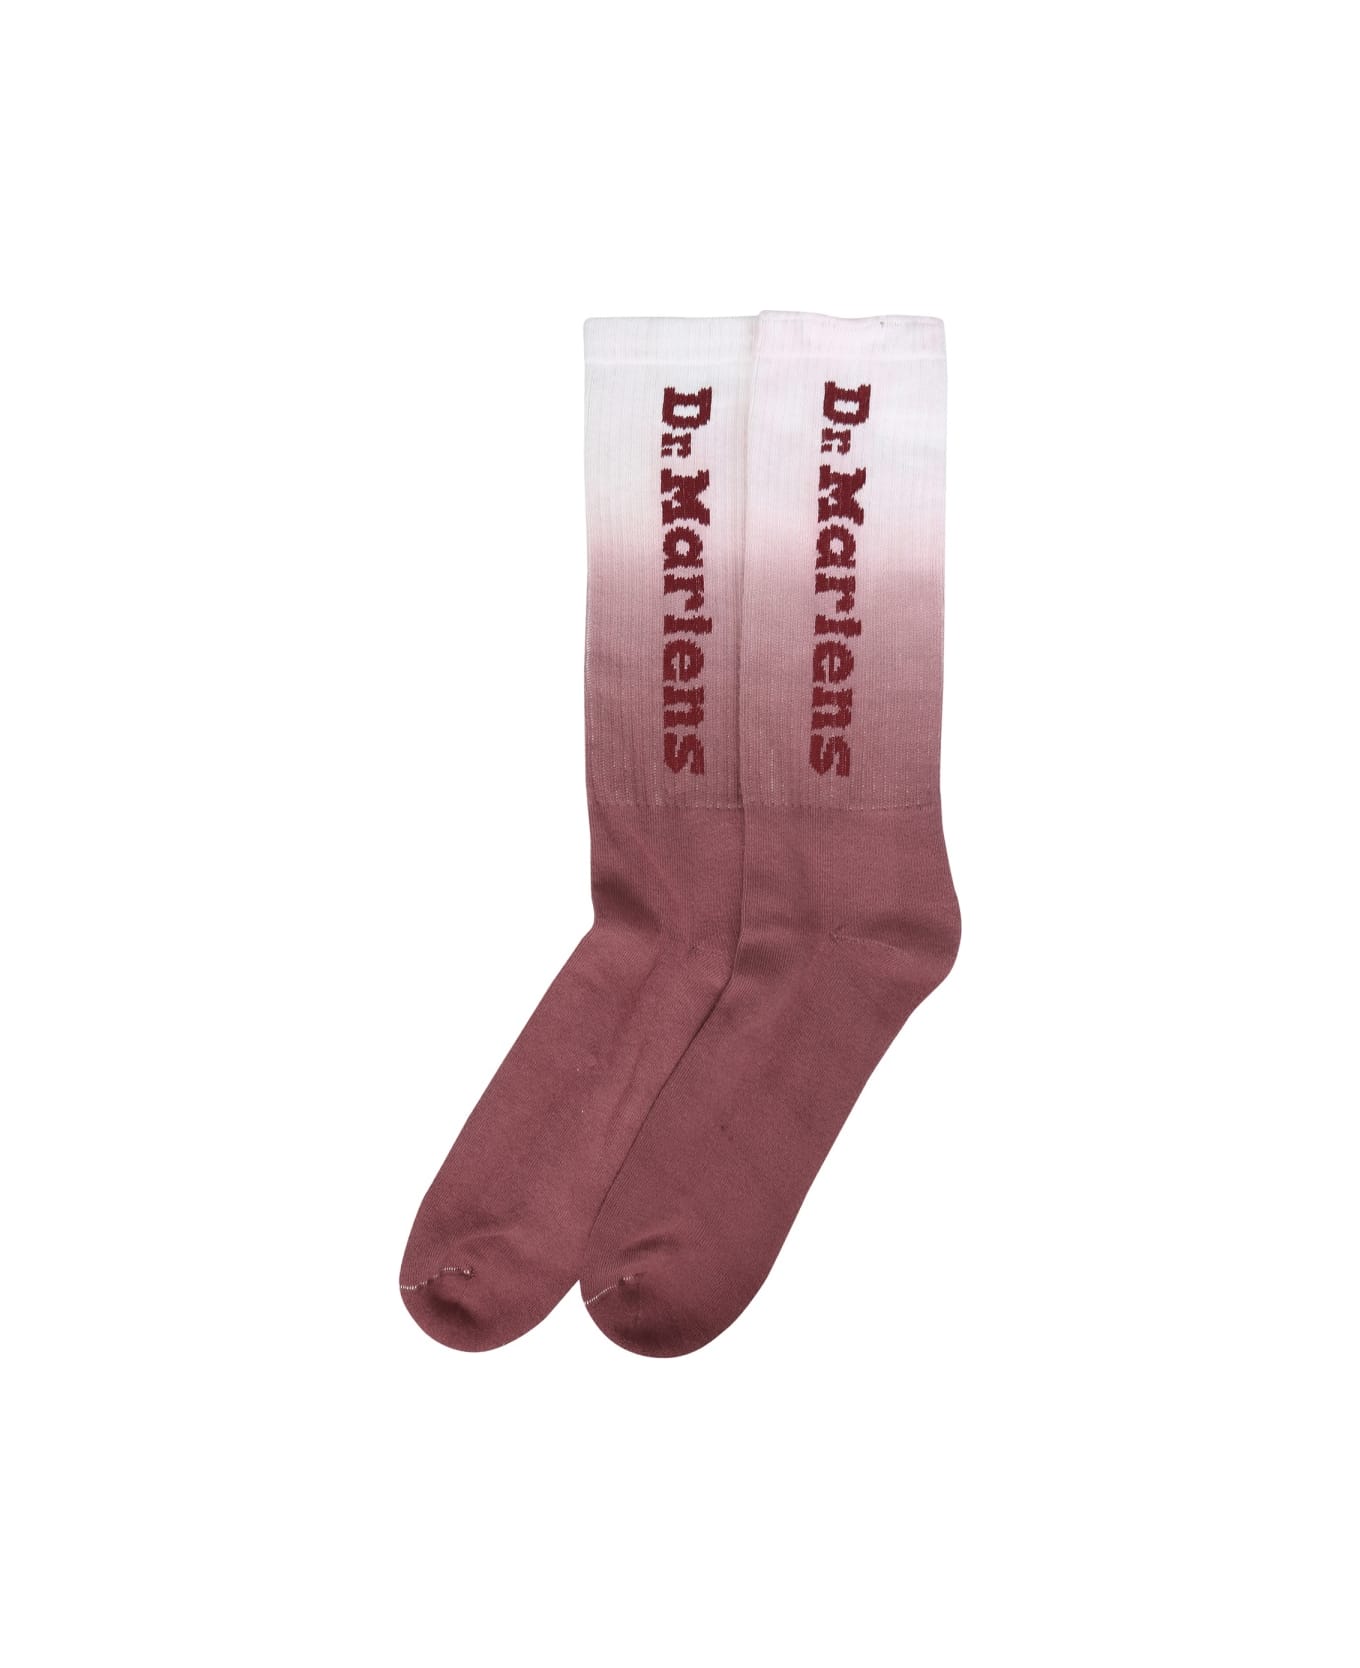 Dr. Martens Cotton Socks - RED